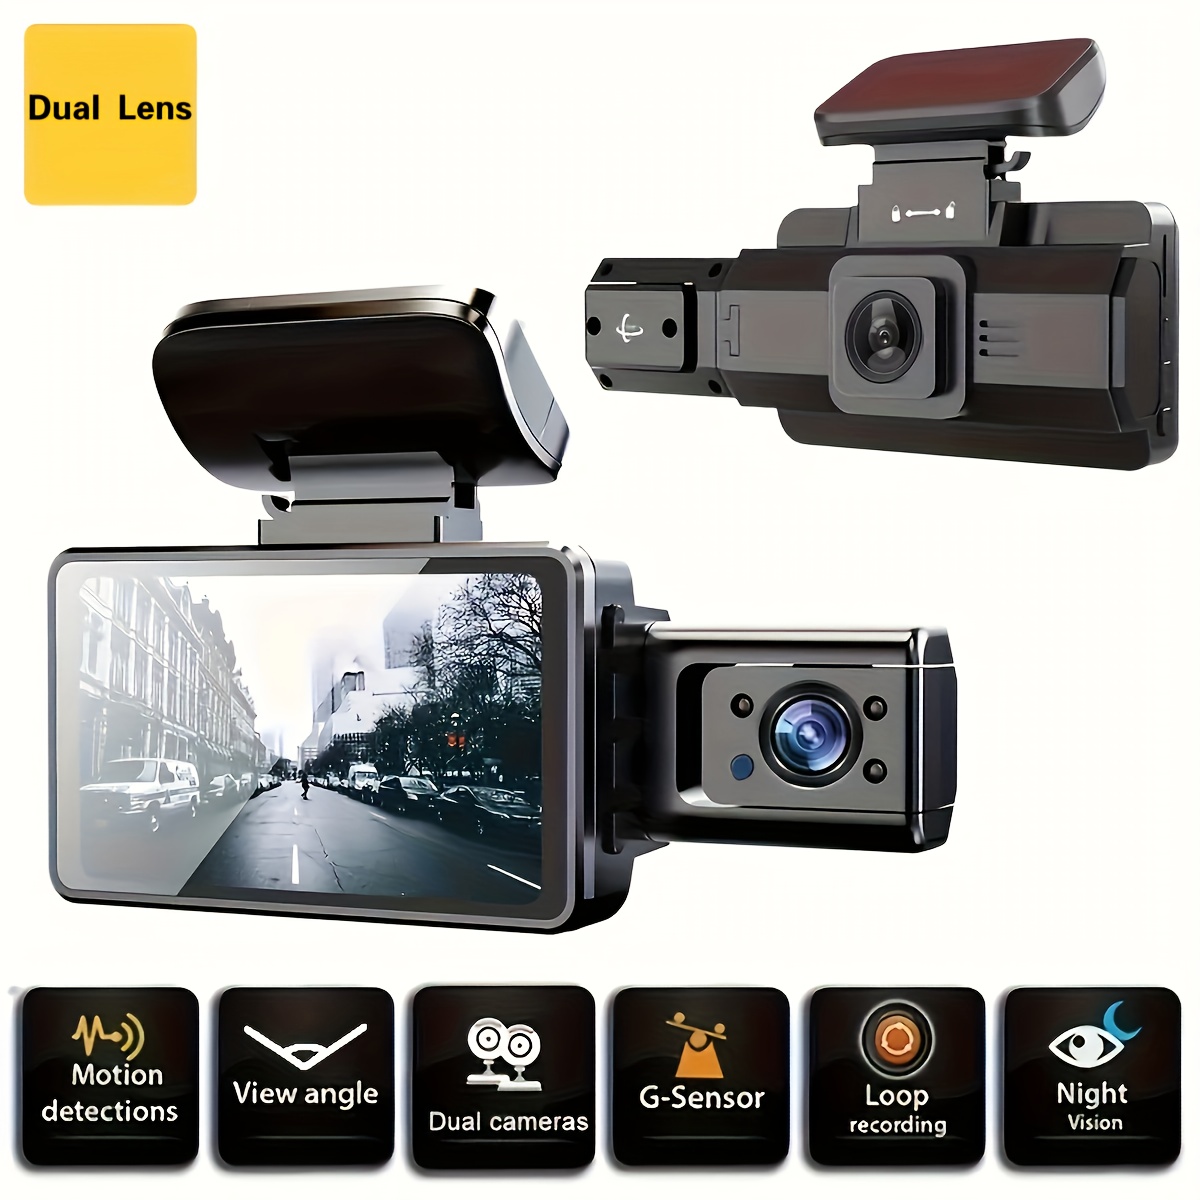 3 Camera Lens Car Dvr 3 channel Dash Cam Hd 1080p Front Rear - Temu United  Kingdom